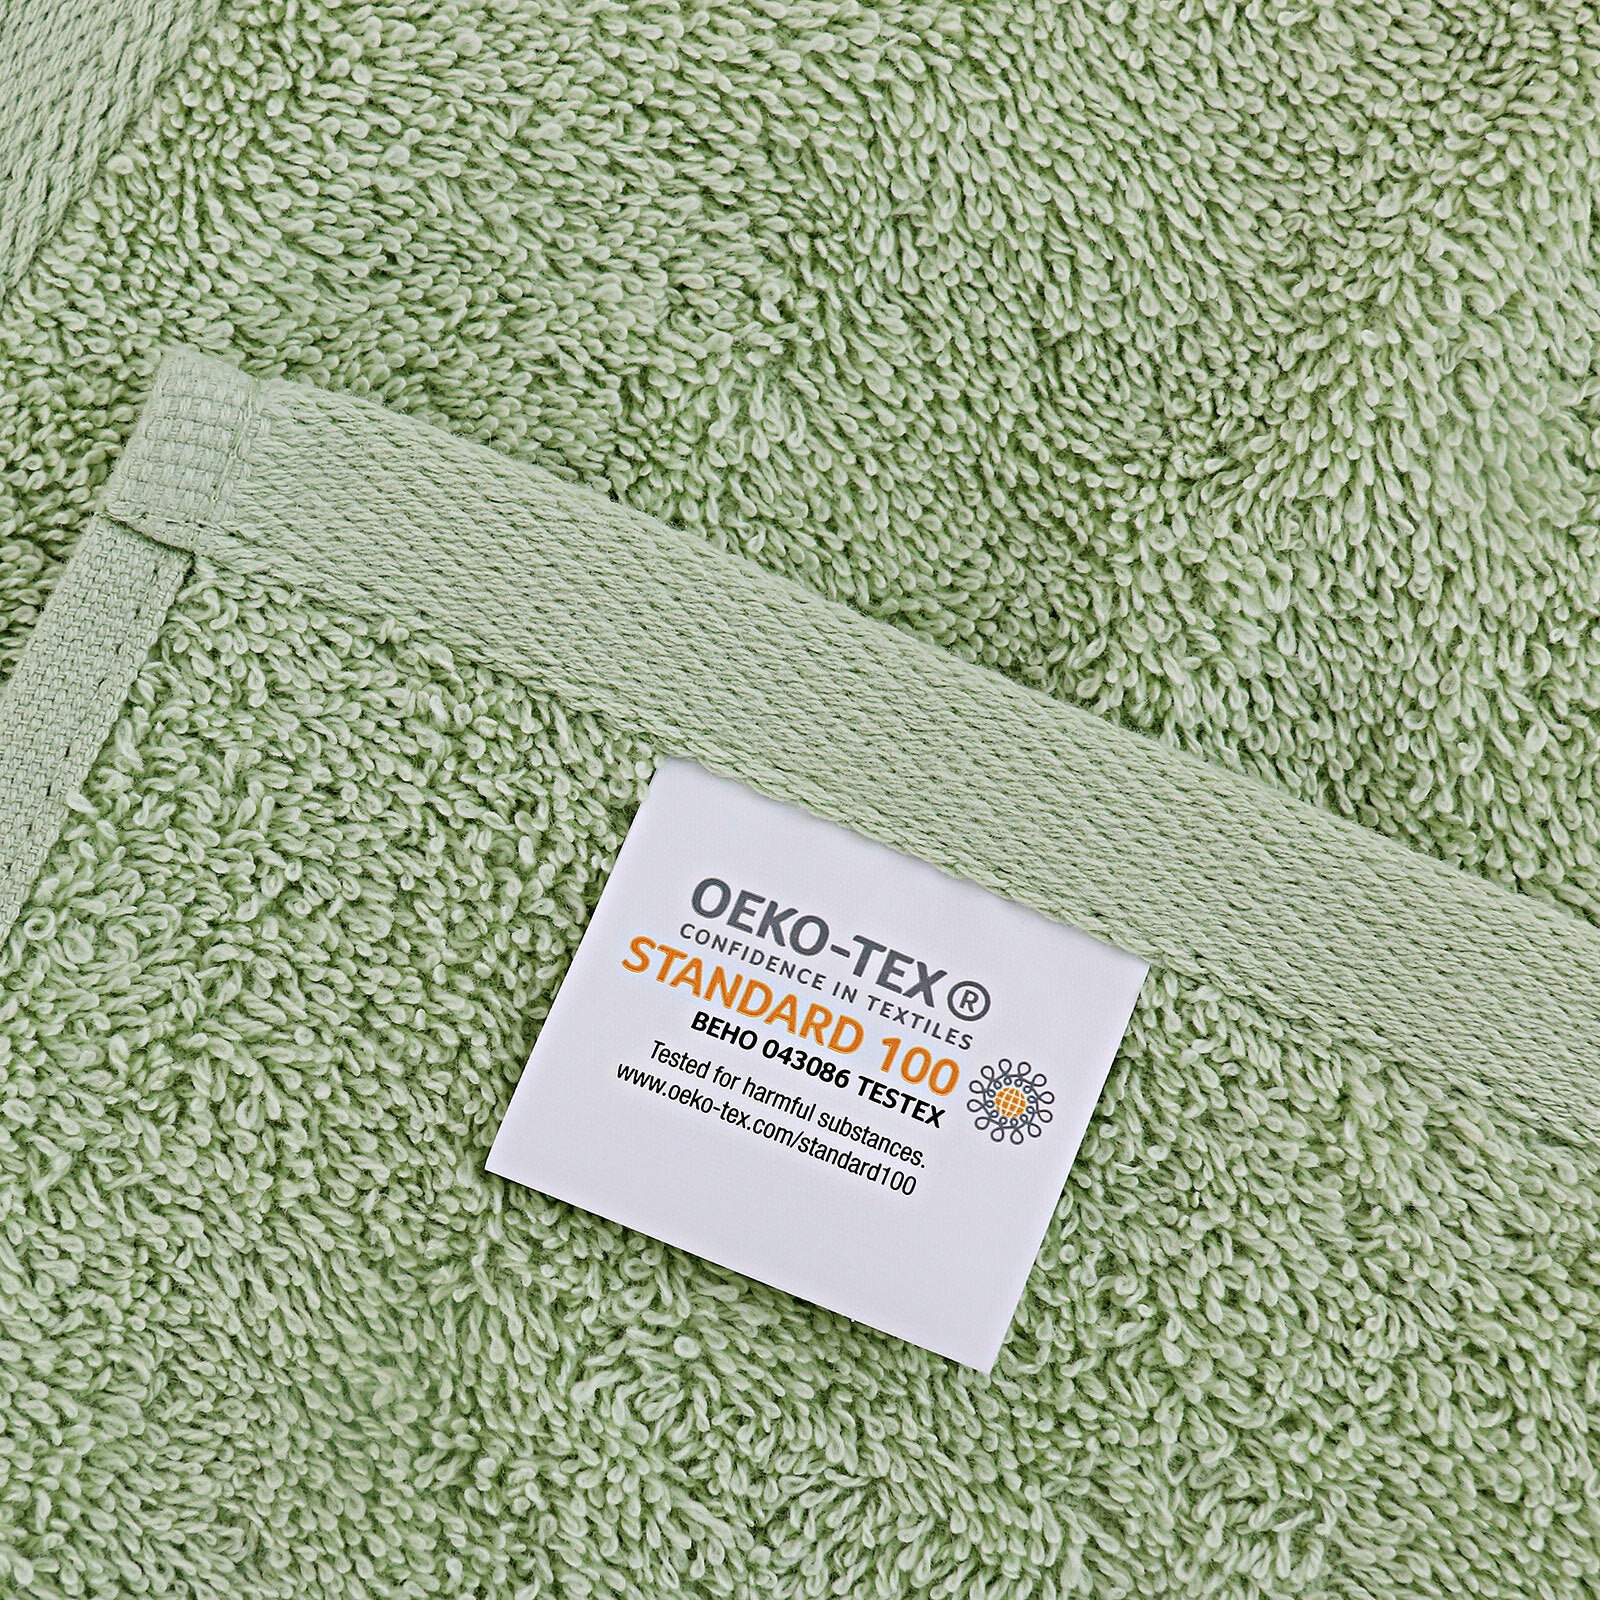 Linenland Bath Towel Set - 4 Piece Cotton Washcloths - Sage Green - Newstart Furniture